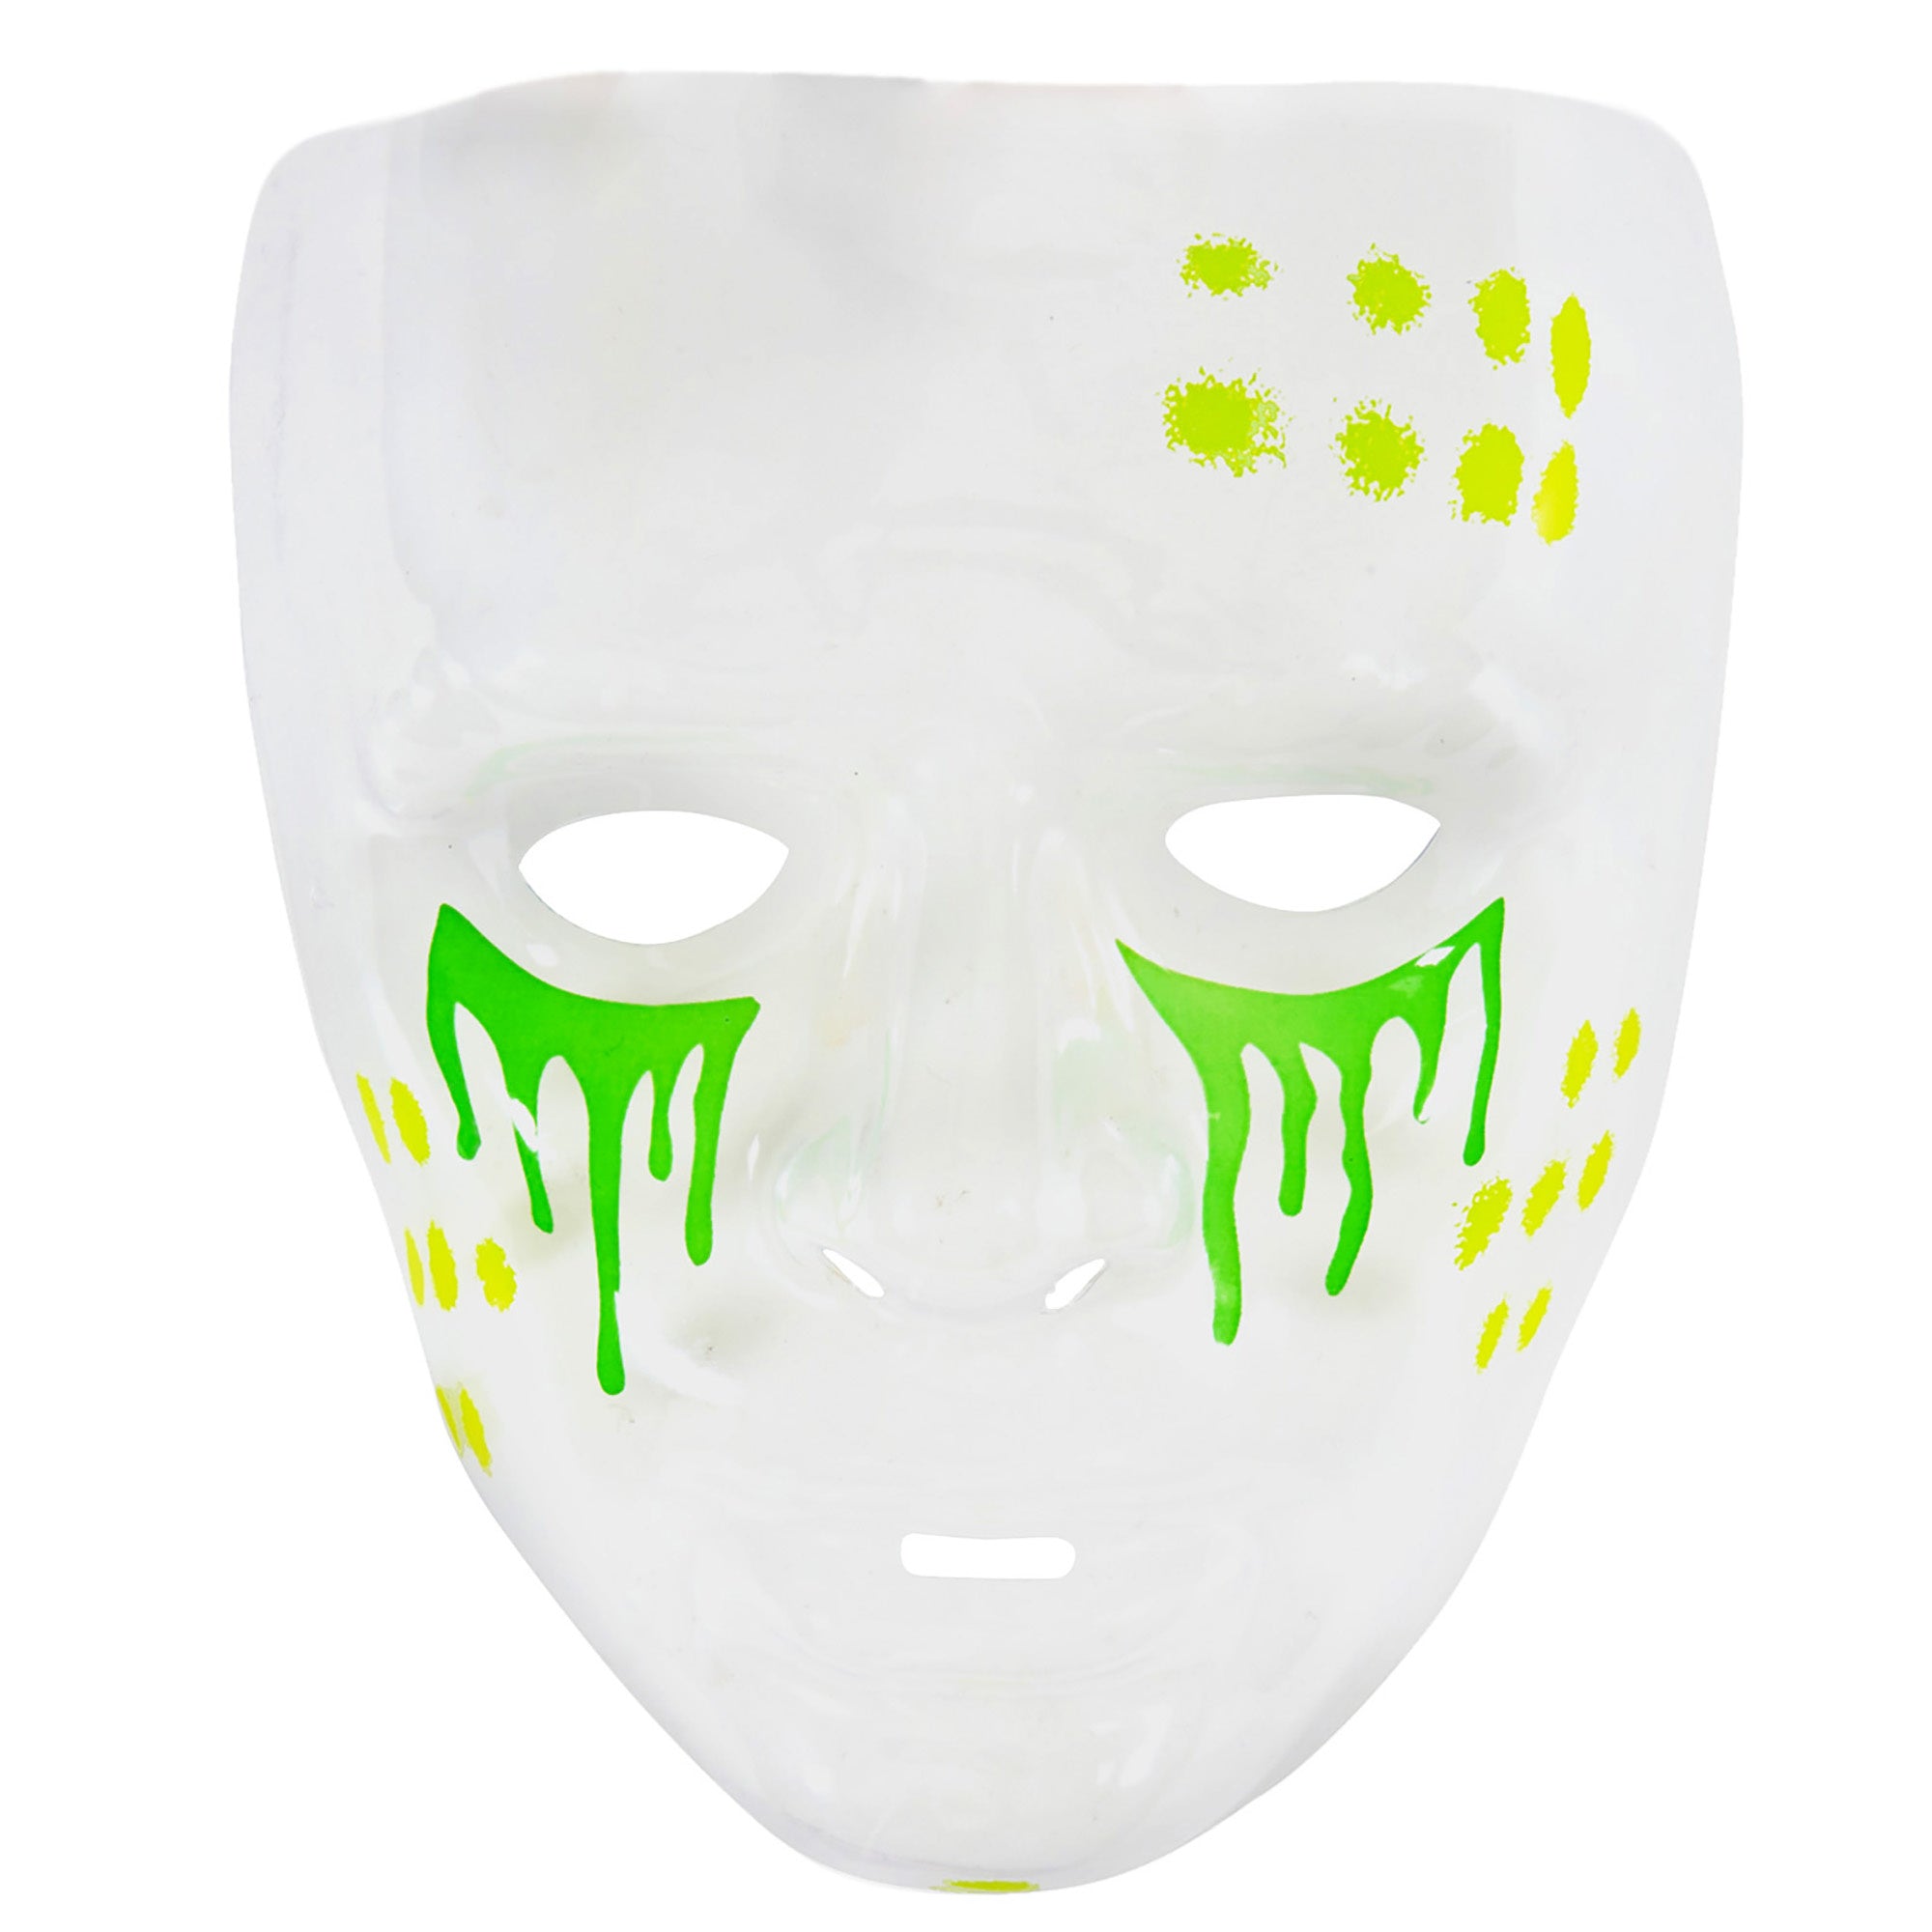 Transparant giftige stoffen masker